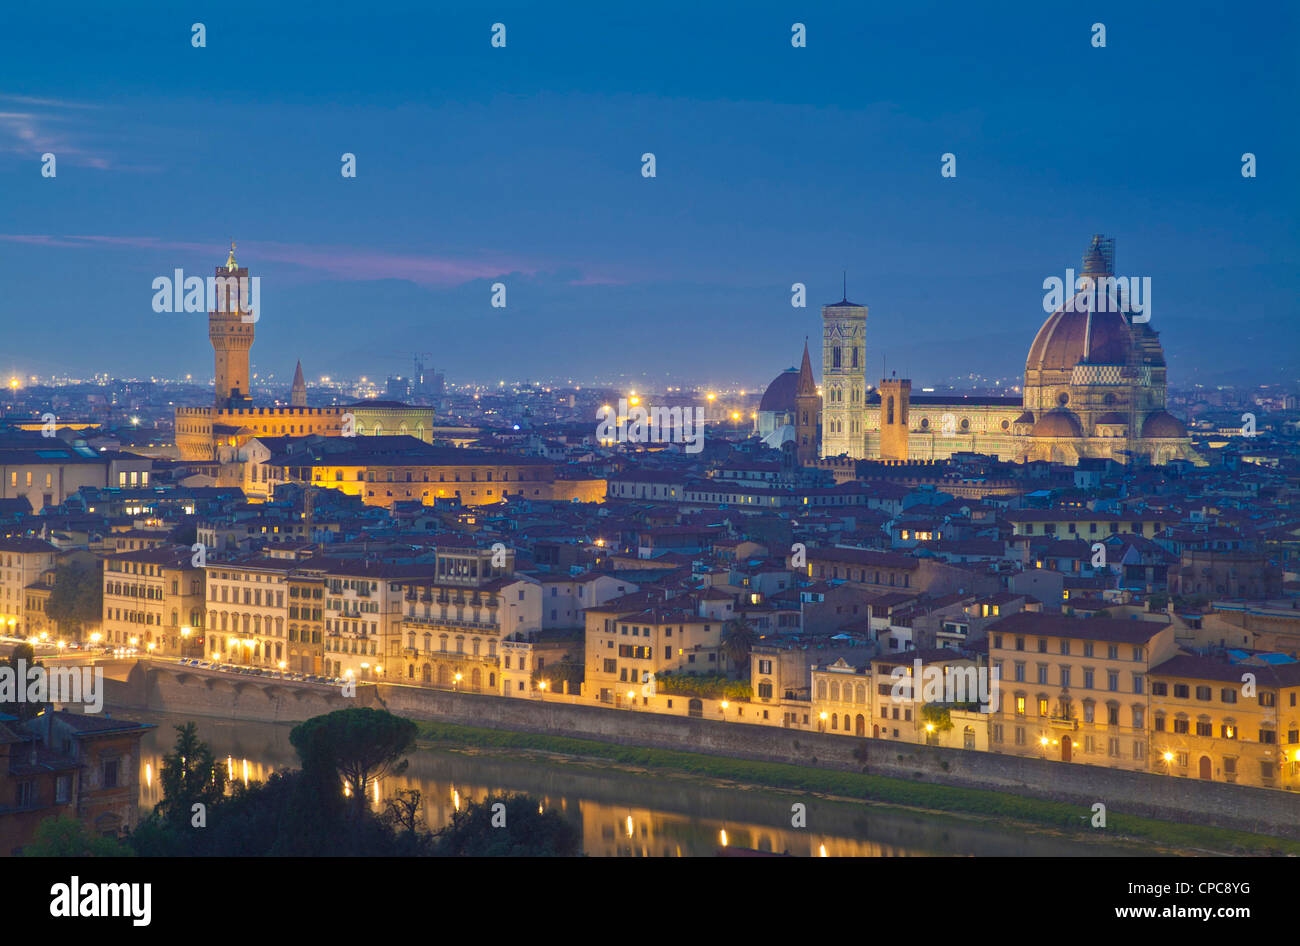 Le duomo et le Campanile de Florence Firenze Italie nuit à l'Europe de l'UE Banque D'Images